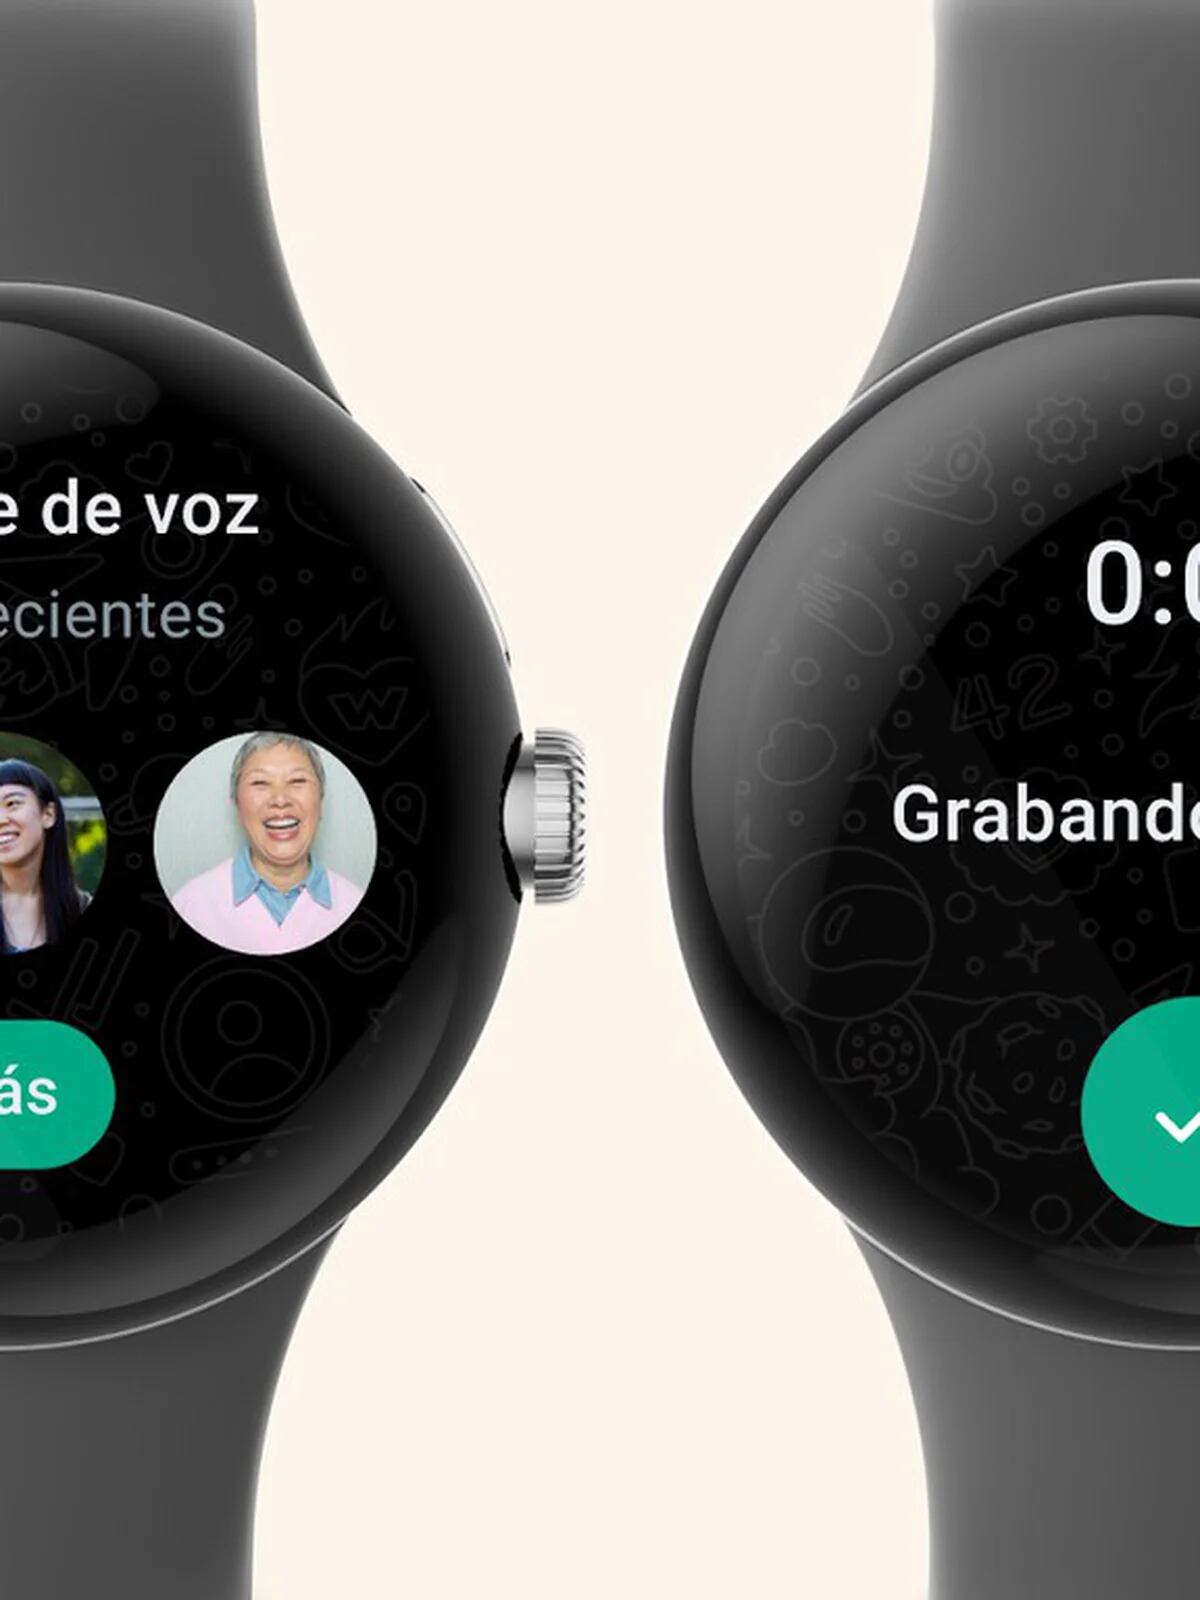 WhatsApp por fin tiene su propia app para relojes con Wear OS